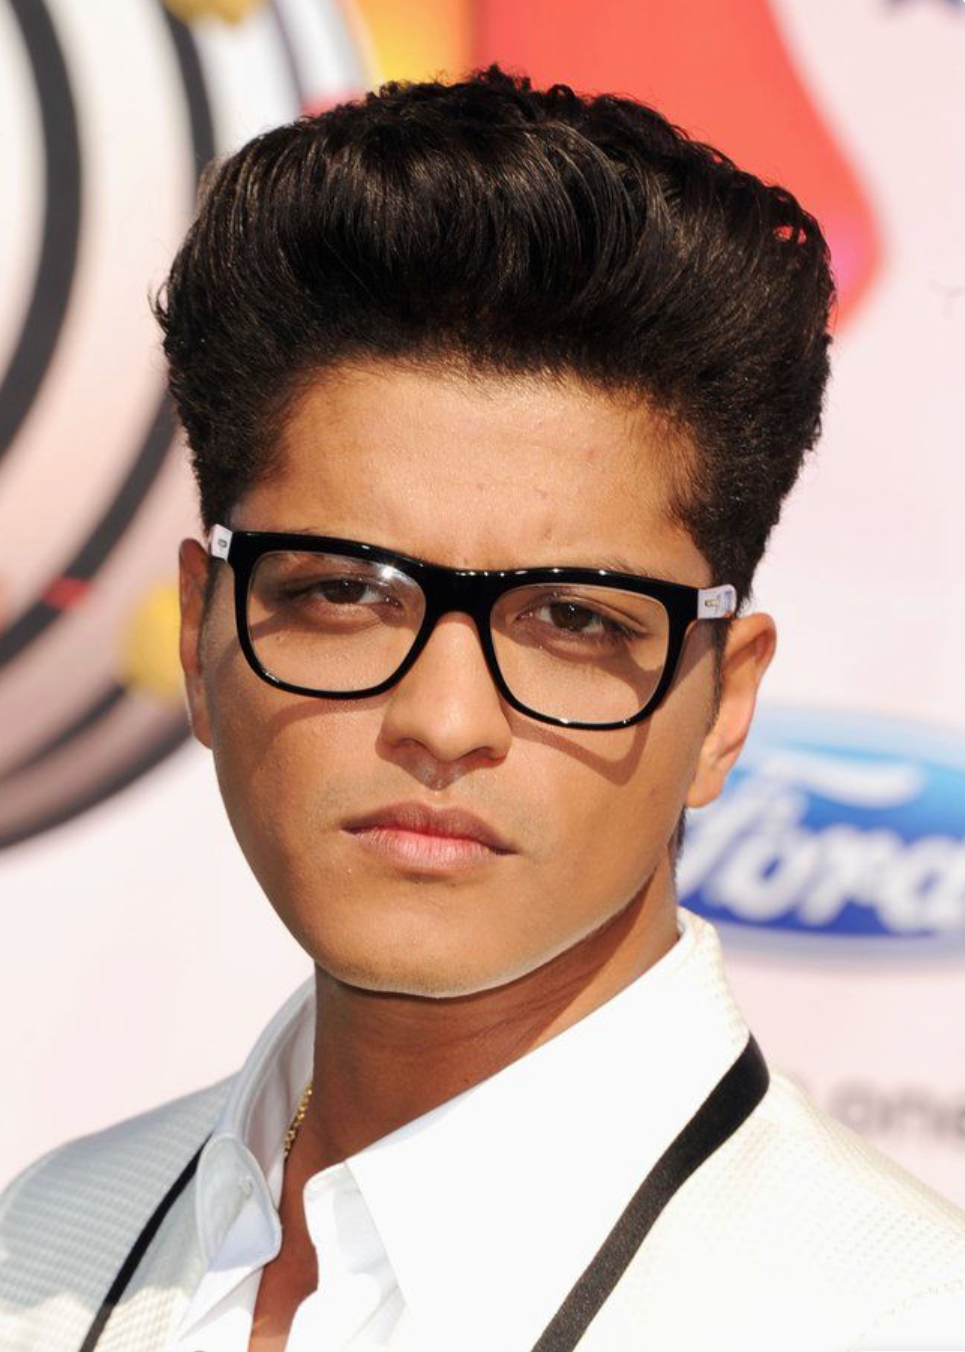 Bruno Mars Retires Signature Pompadour Hairstyle